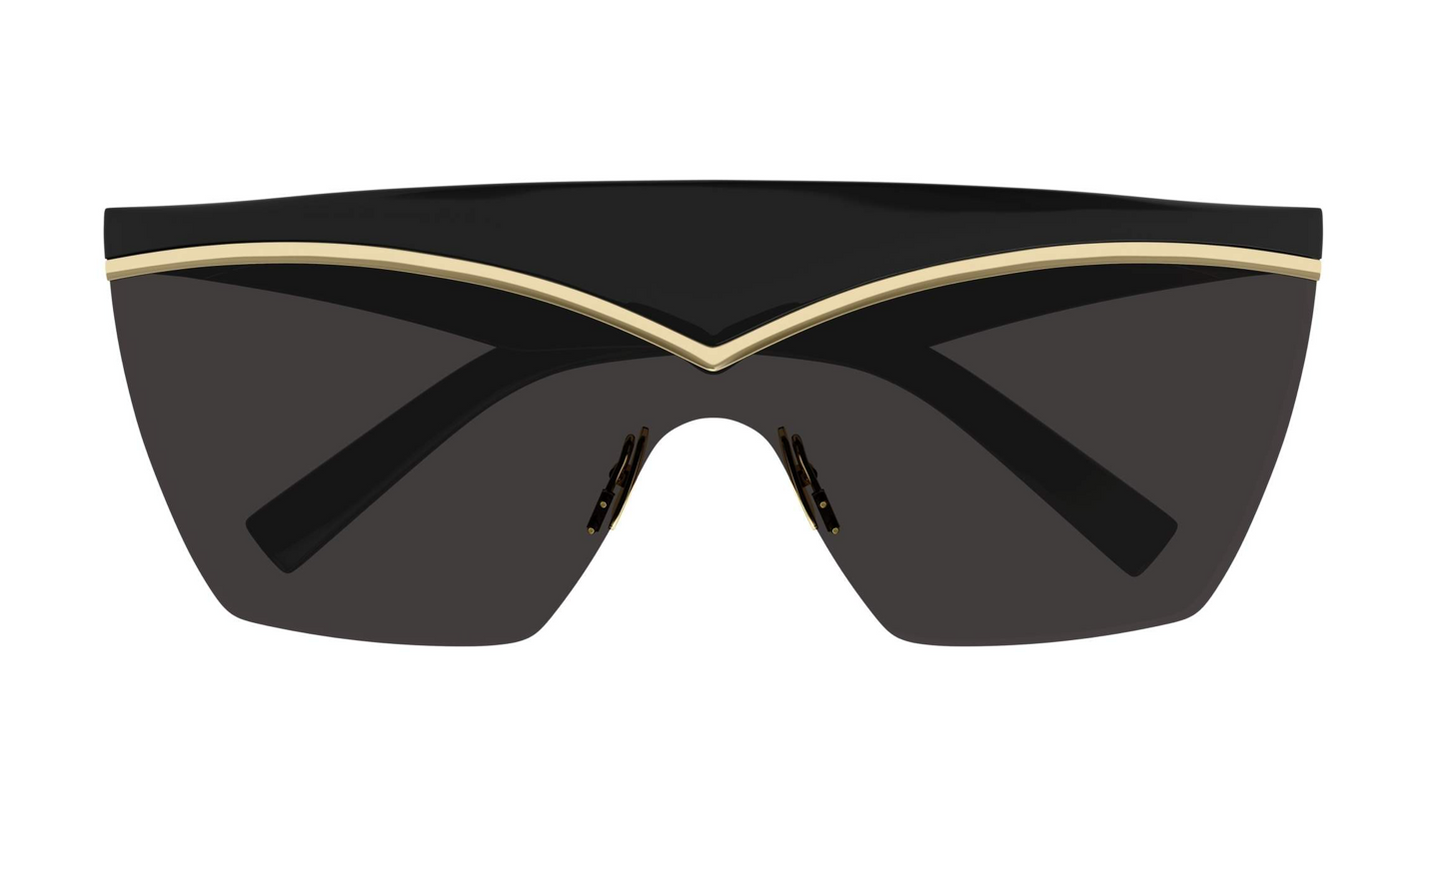 Yvest Saint Laurent SL-614-MASK-001 99mm New Sunglasses